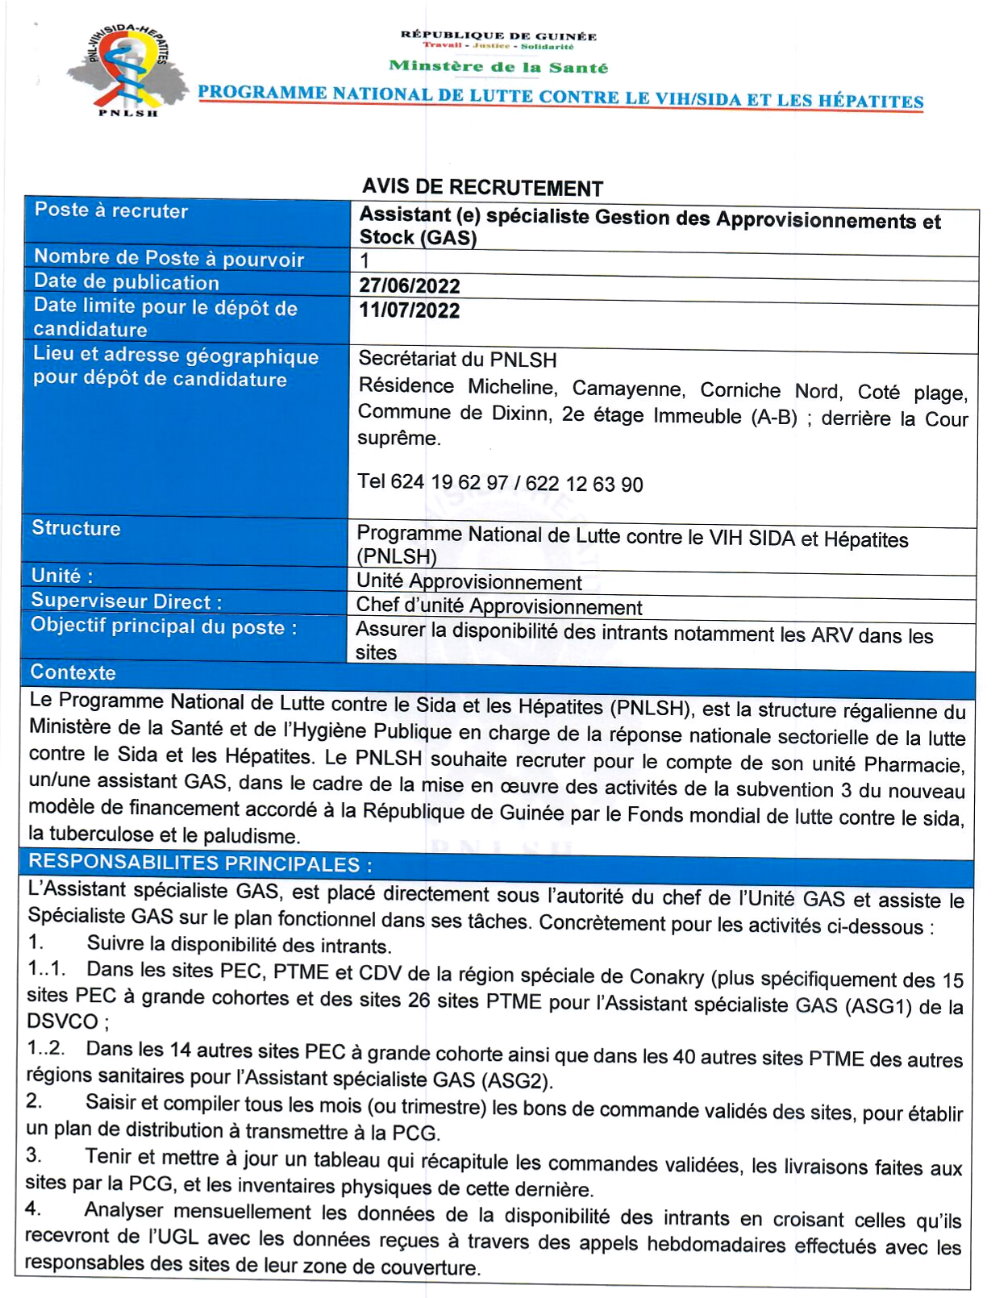 Avis de recrutement d'un Assistant (e) spécialiste Gestion des Approvisionnements et Stock (GAS) page 1